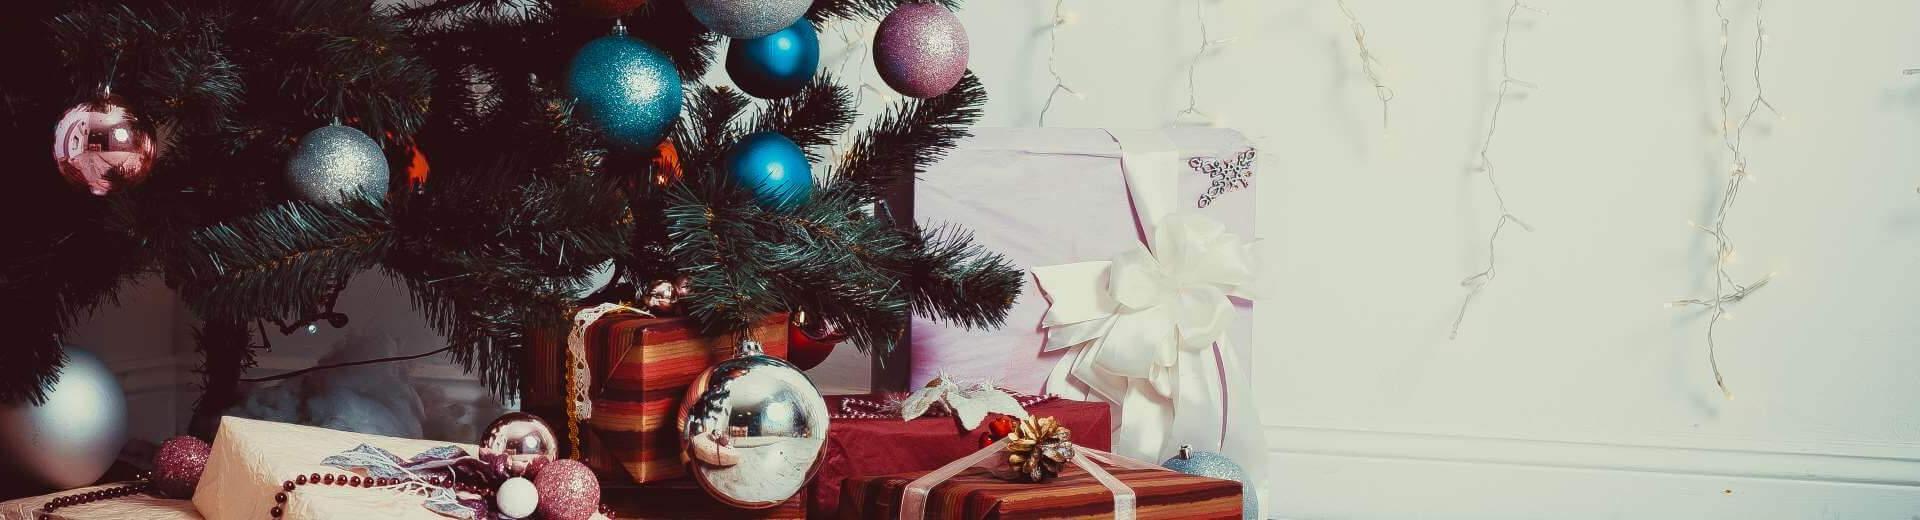 Weihnachten im Ferienhaus in Belgien | Casamundo - Casamundo